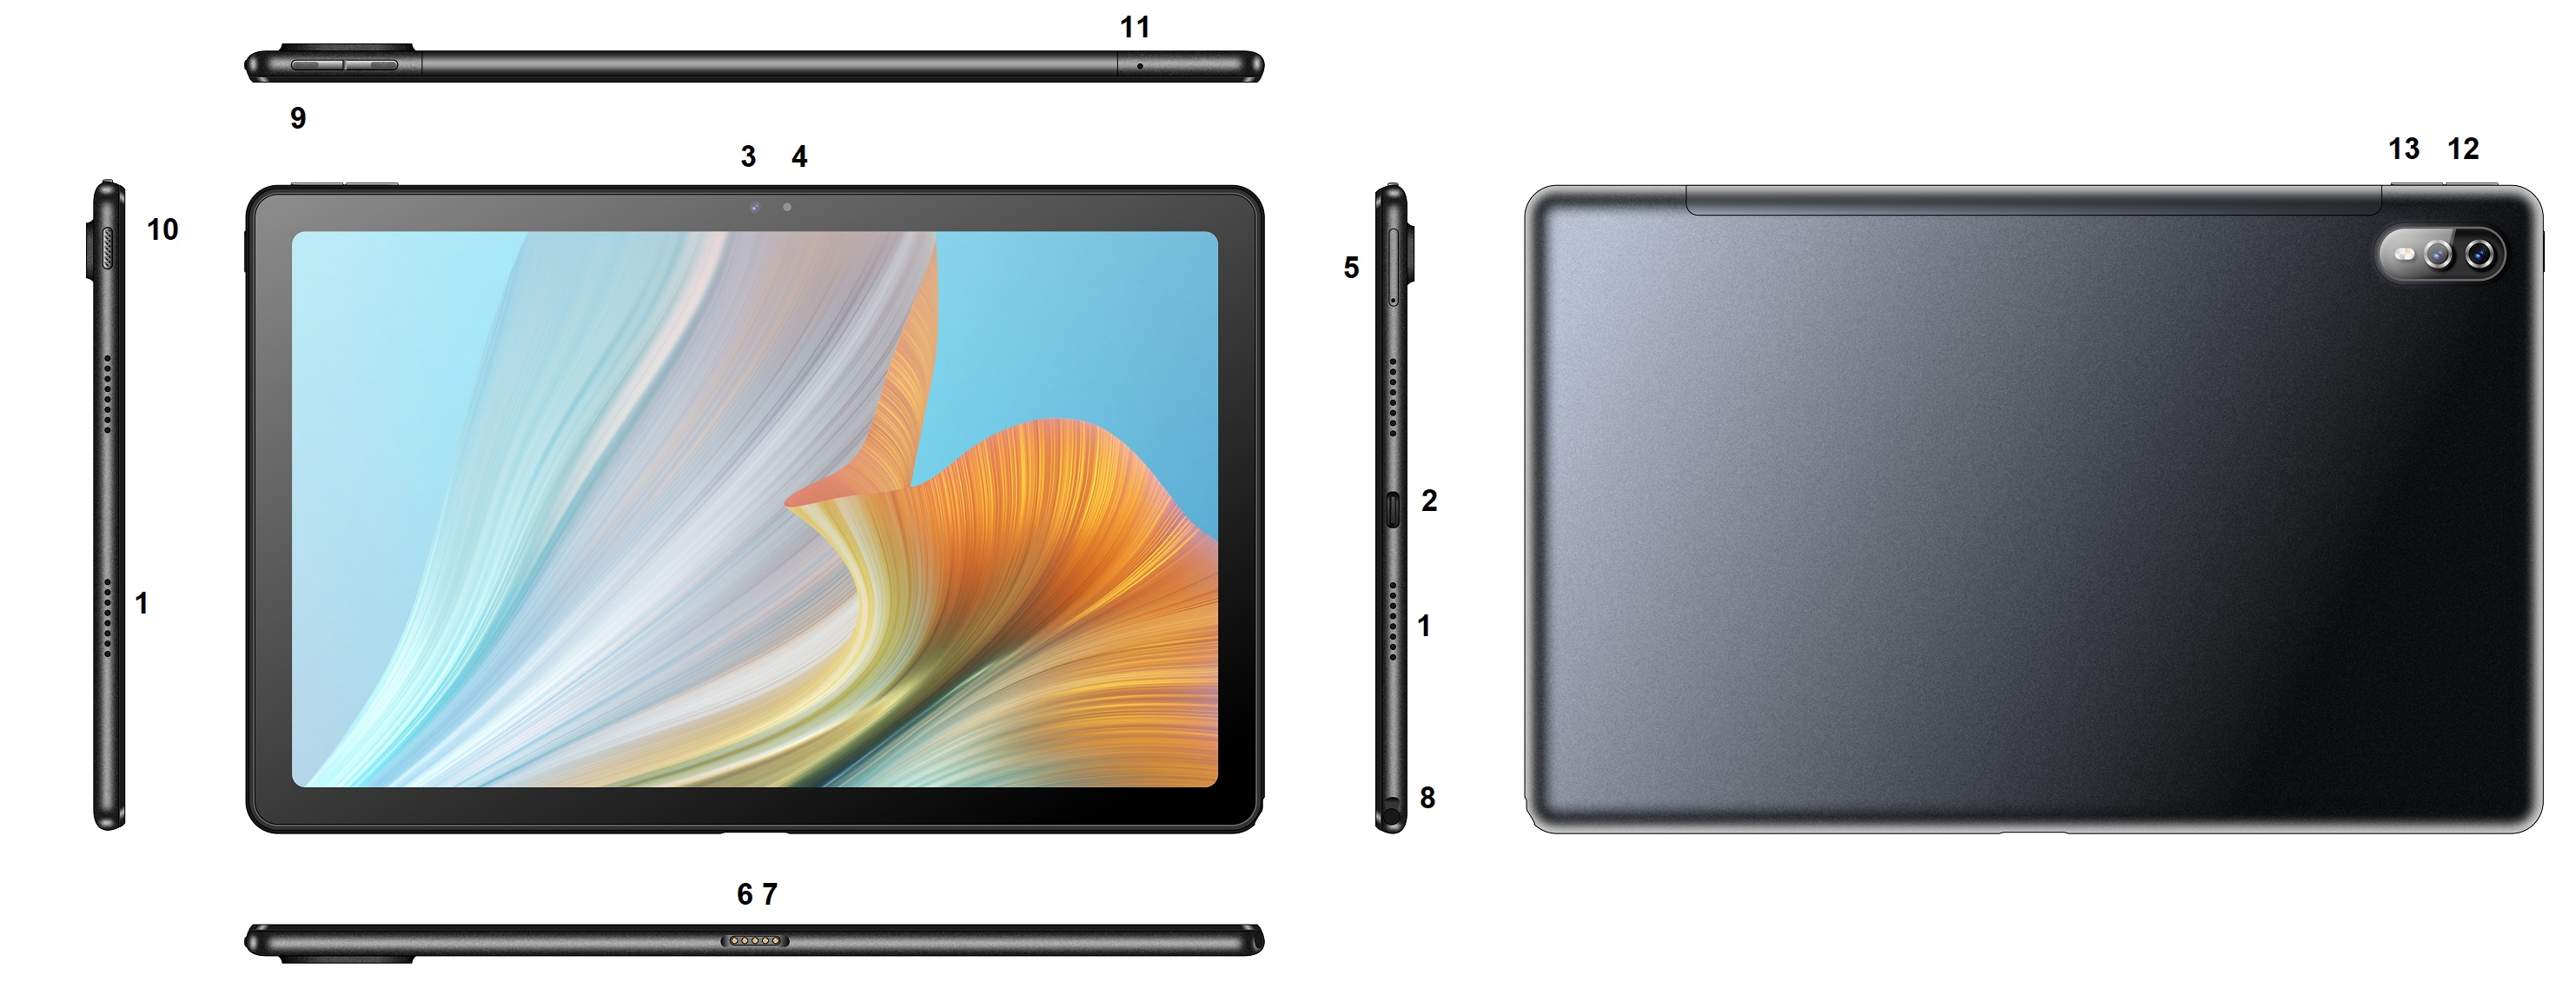 VANKYO MatrixPad P31 Tablet Octa-Core de 10 pulgadas - Producto terminadoview